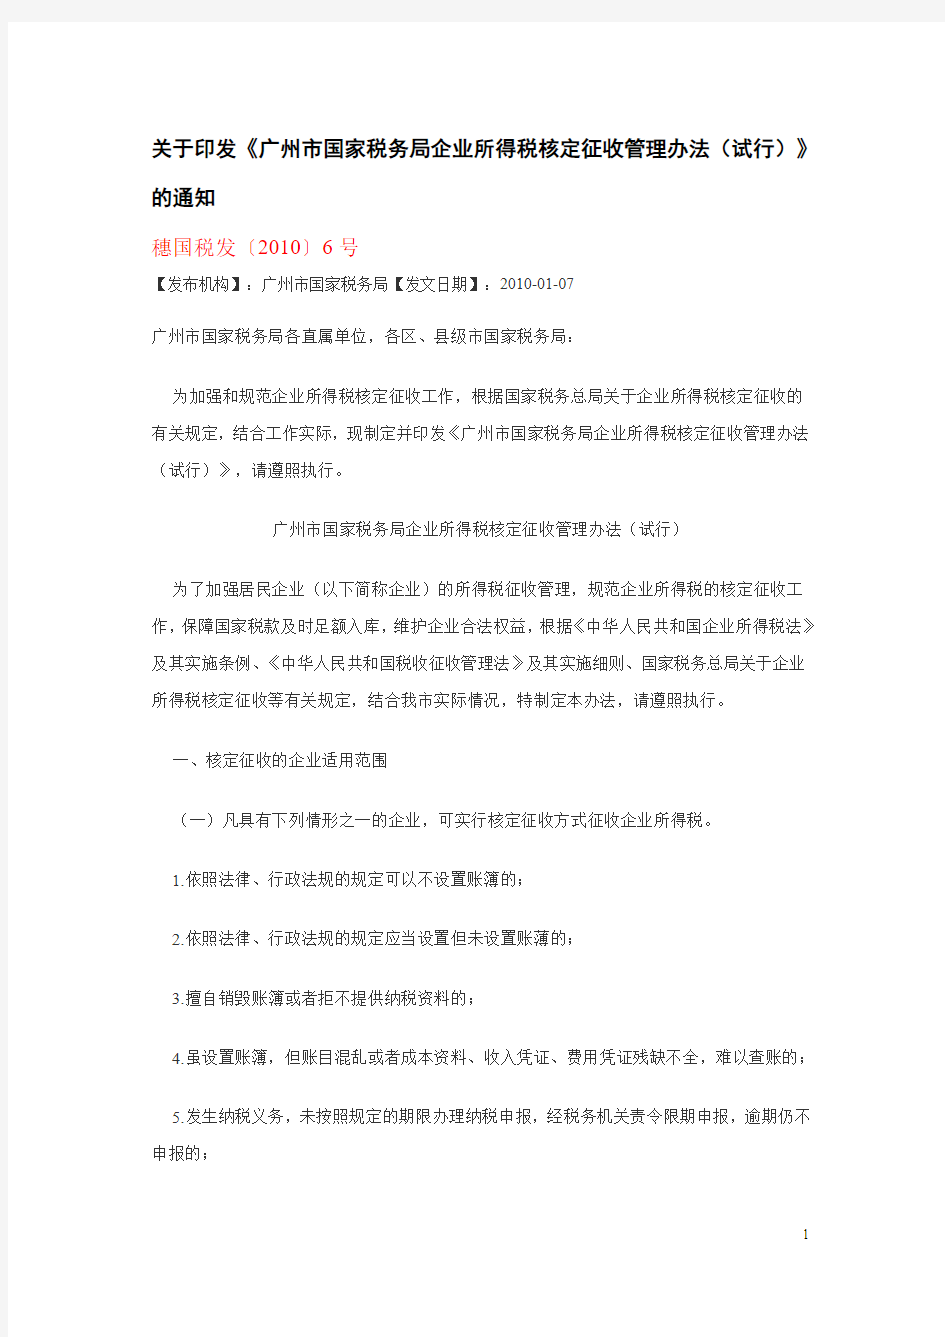 关于印发《广州市国家税务局企业所得税核定征收管理办法(试行)》的通知